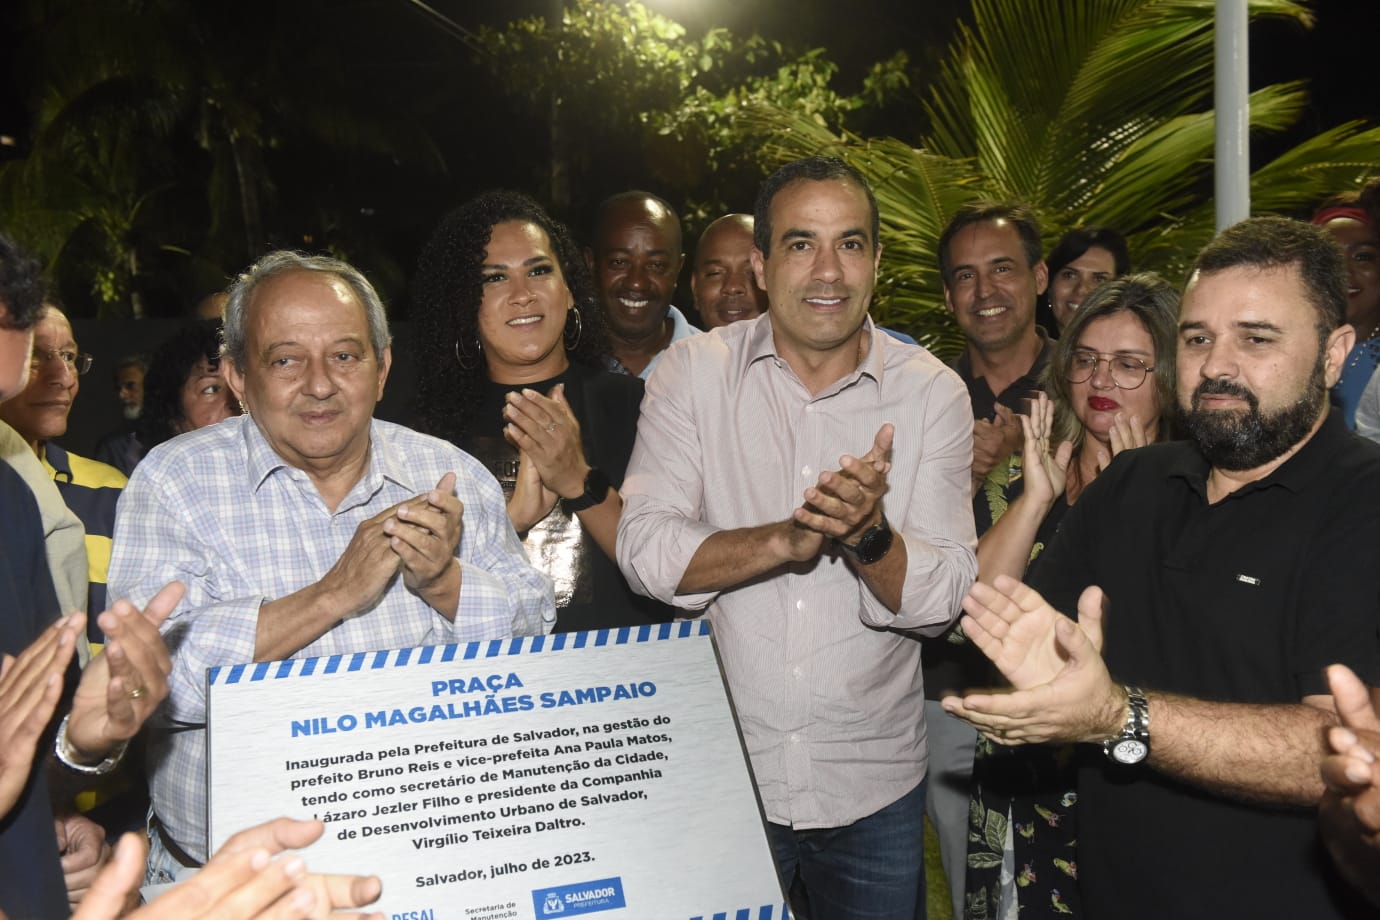 Prefeitura alcança marca de 372 praças entregues em Salvador nos últimos dois anos